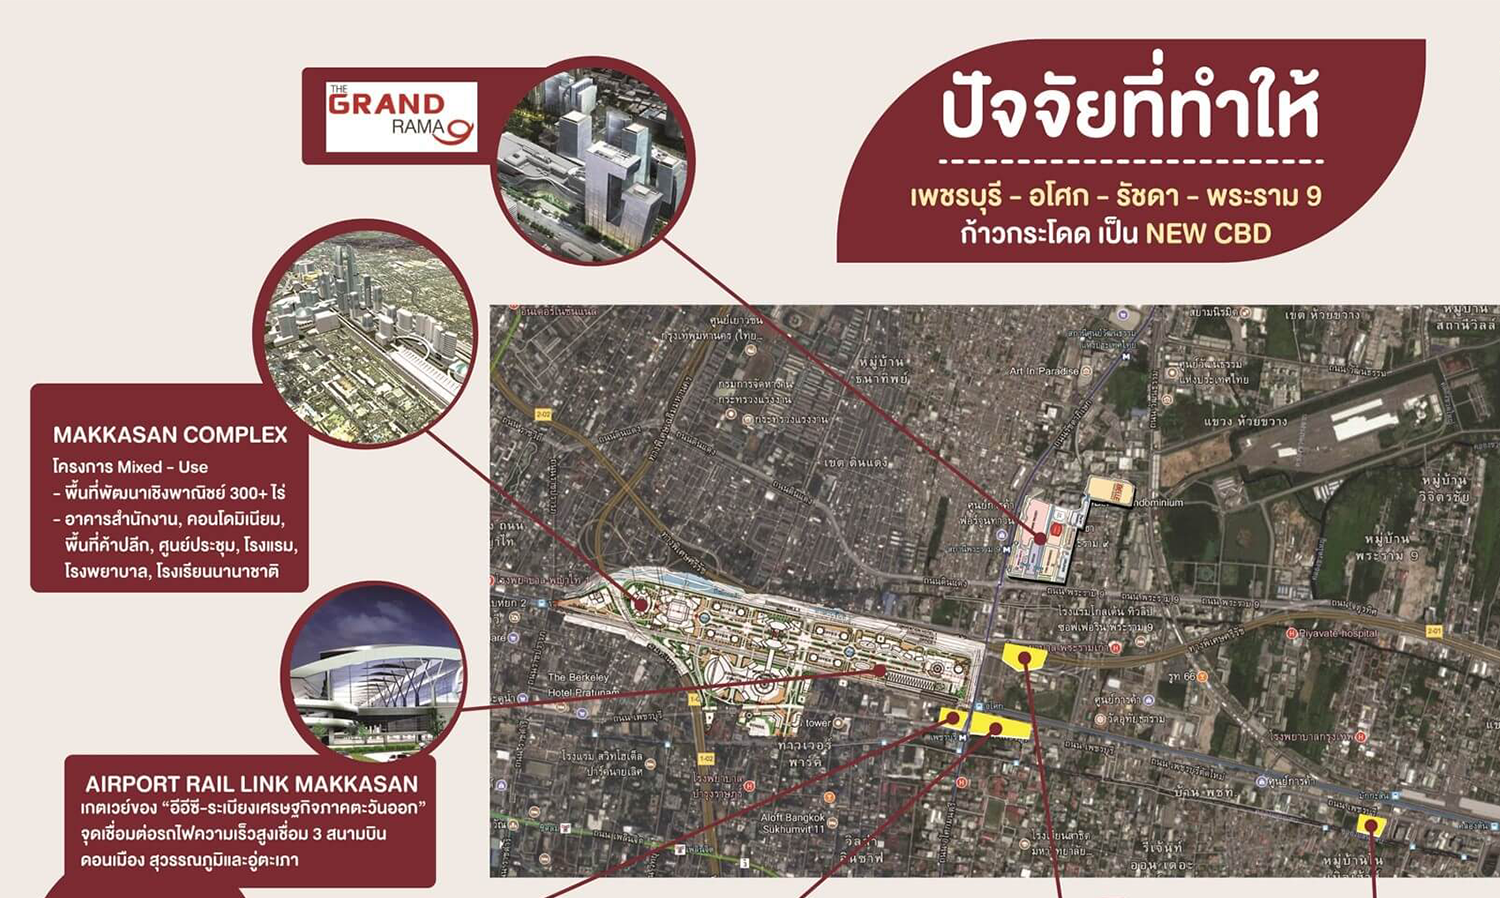 ไนท์แฟรงค์ประเทศไทยชวนจับตาทิศทางอนาคตพื้นที่ เพชรบุรี-อโศก- รัชดา-พระราม9